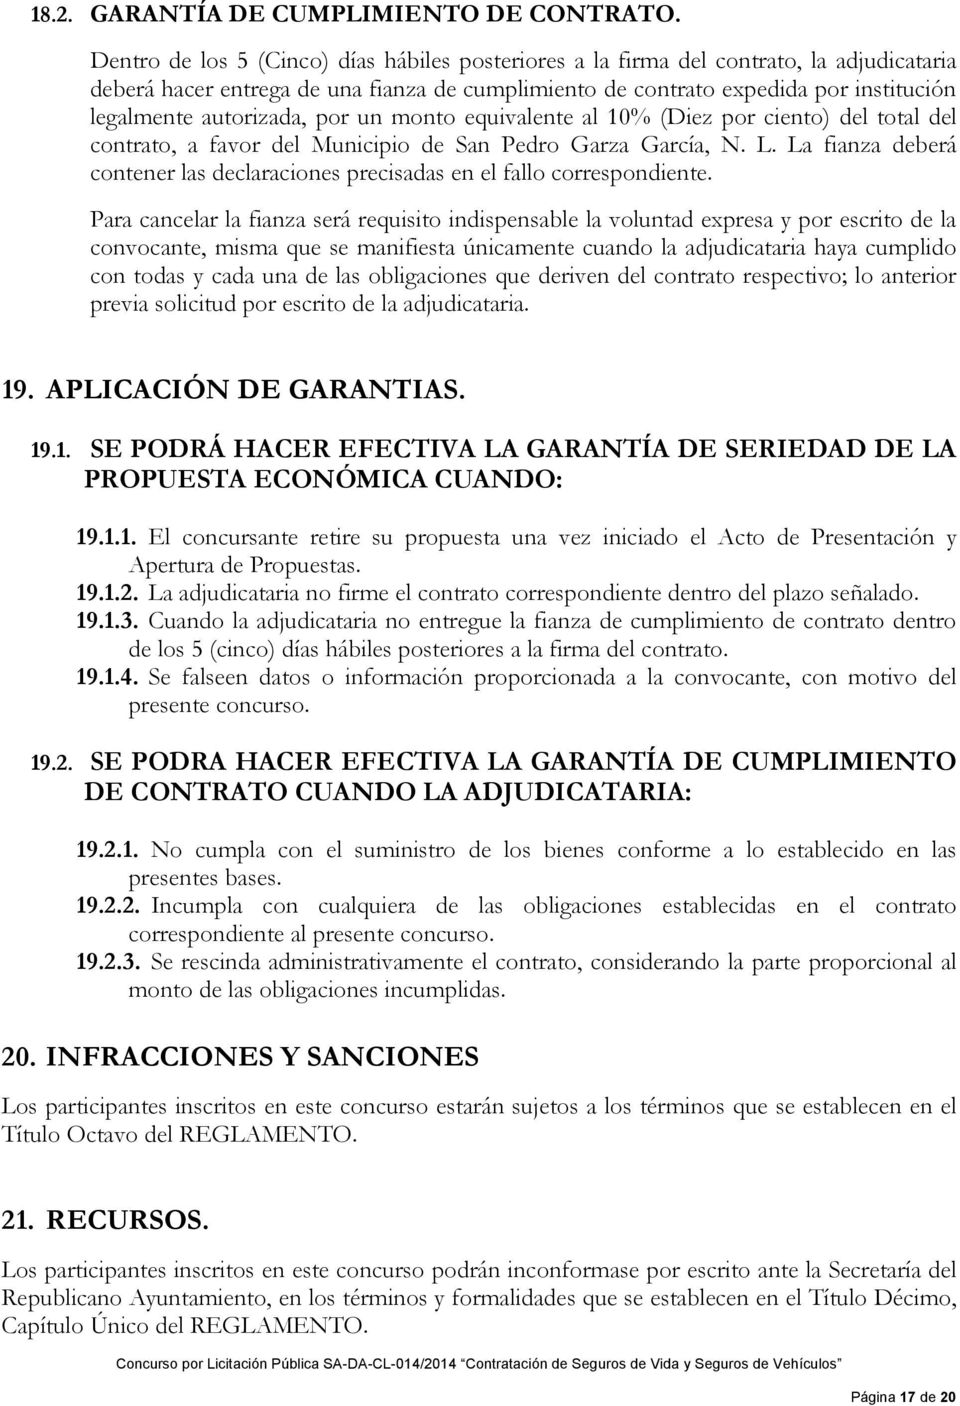 autorizada, por un monto equivalente al 10% (Diez por ciento) del total del contrato, a favor del Municipio de San Pedro Garza García, N. L.